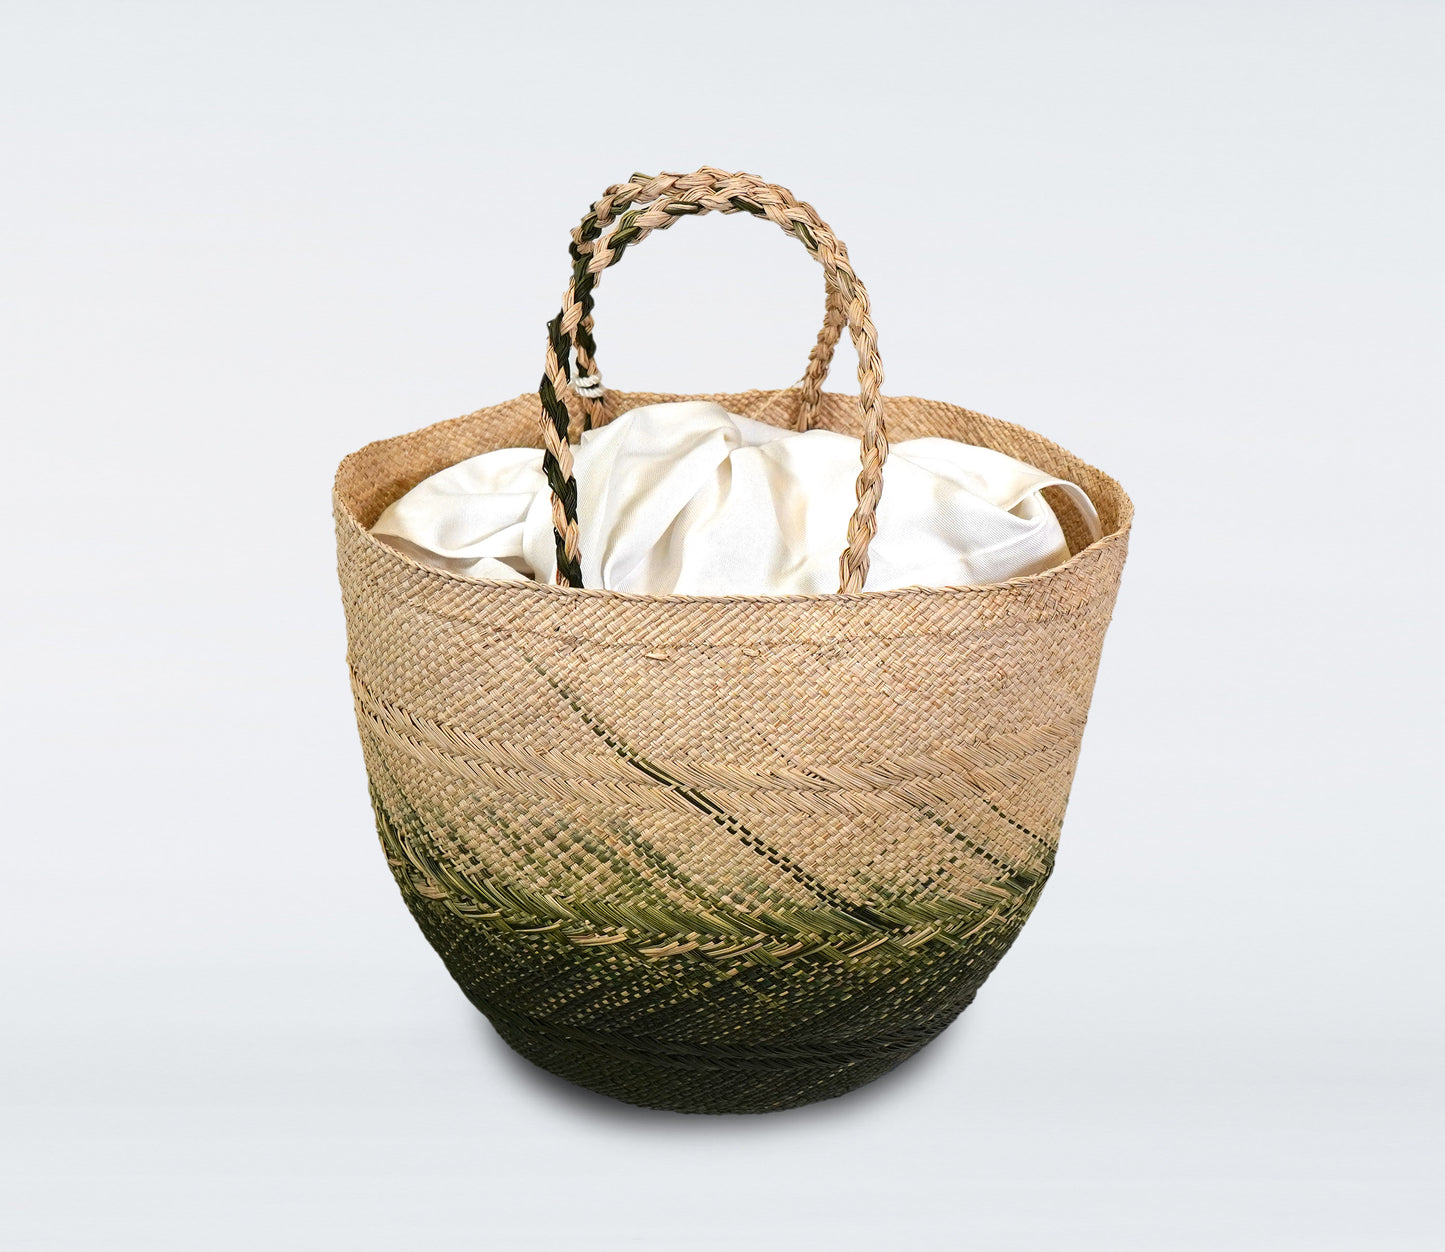 Milos: Bolso Capazo mediano en paja natural, verde oliva, bolsa de algodón y concha natural.